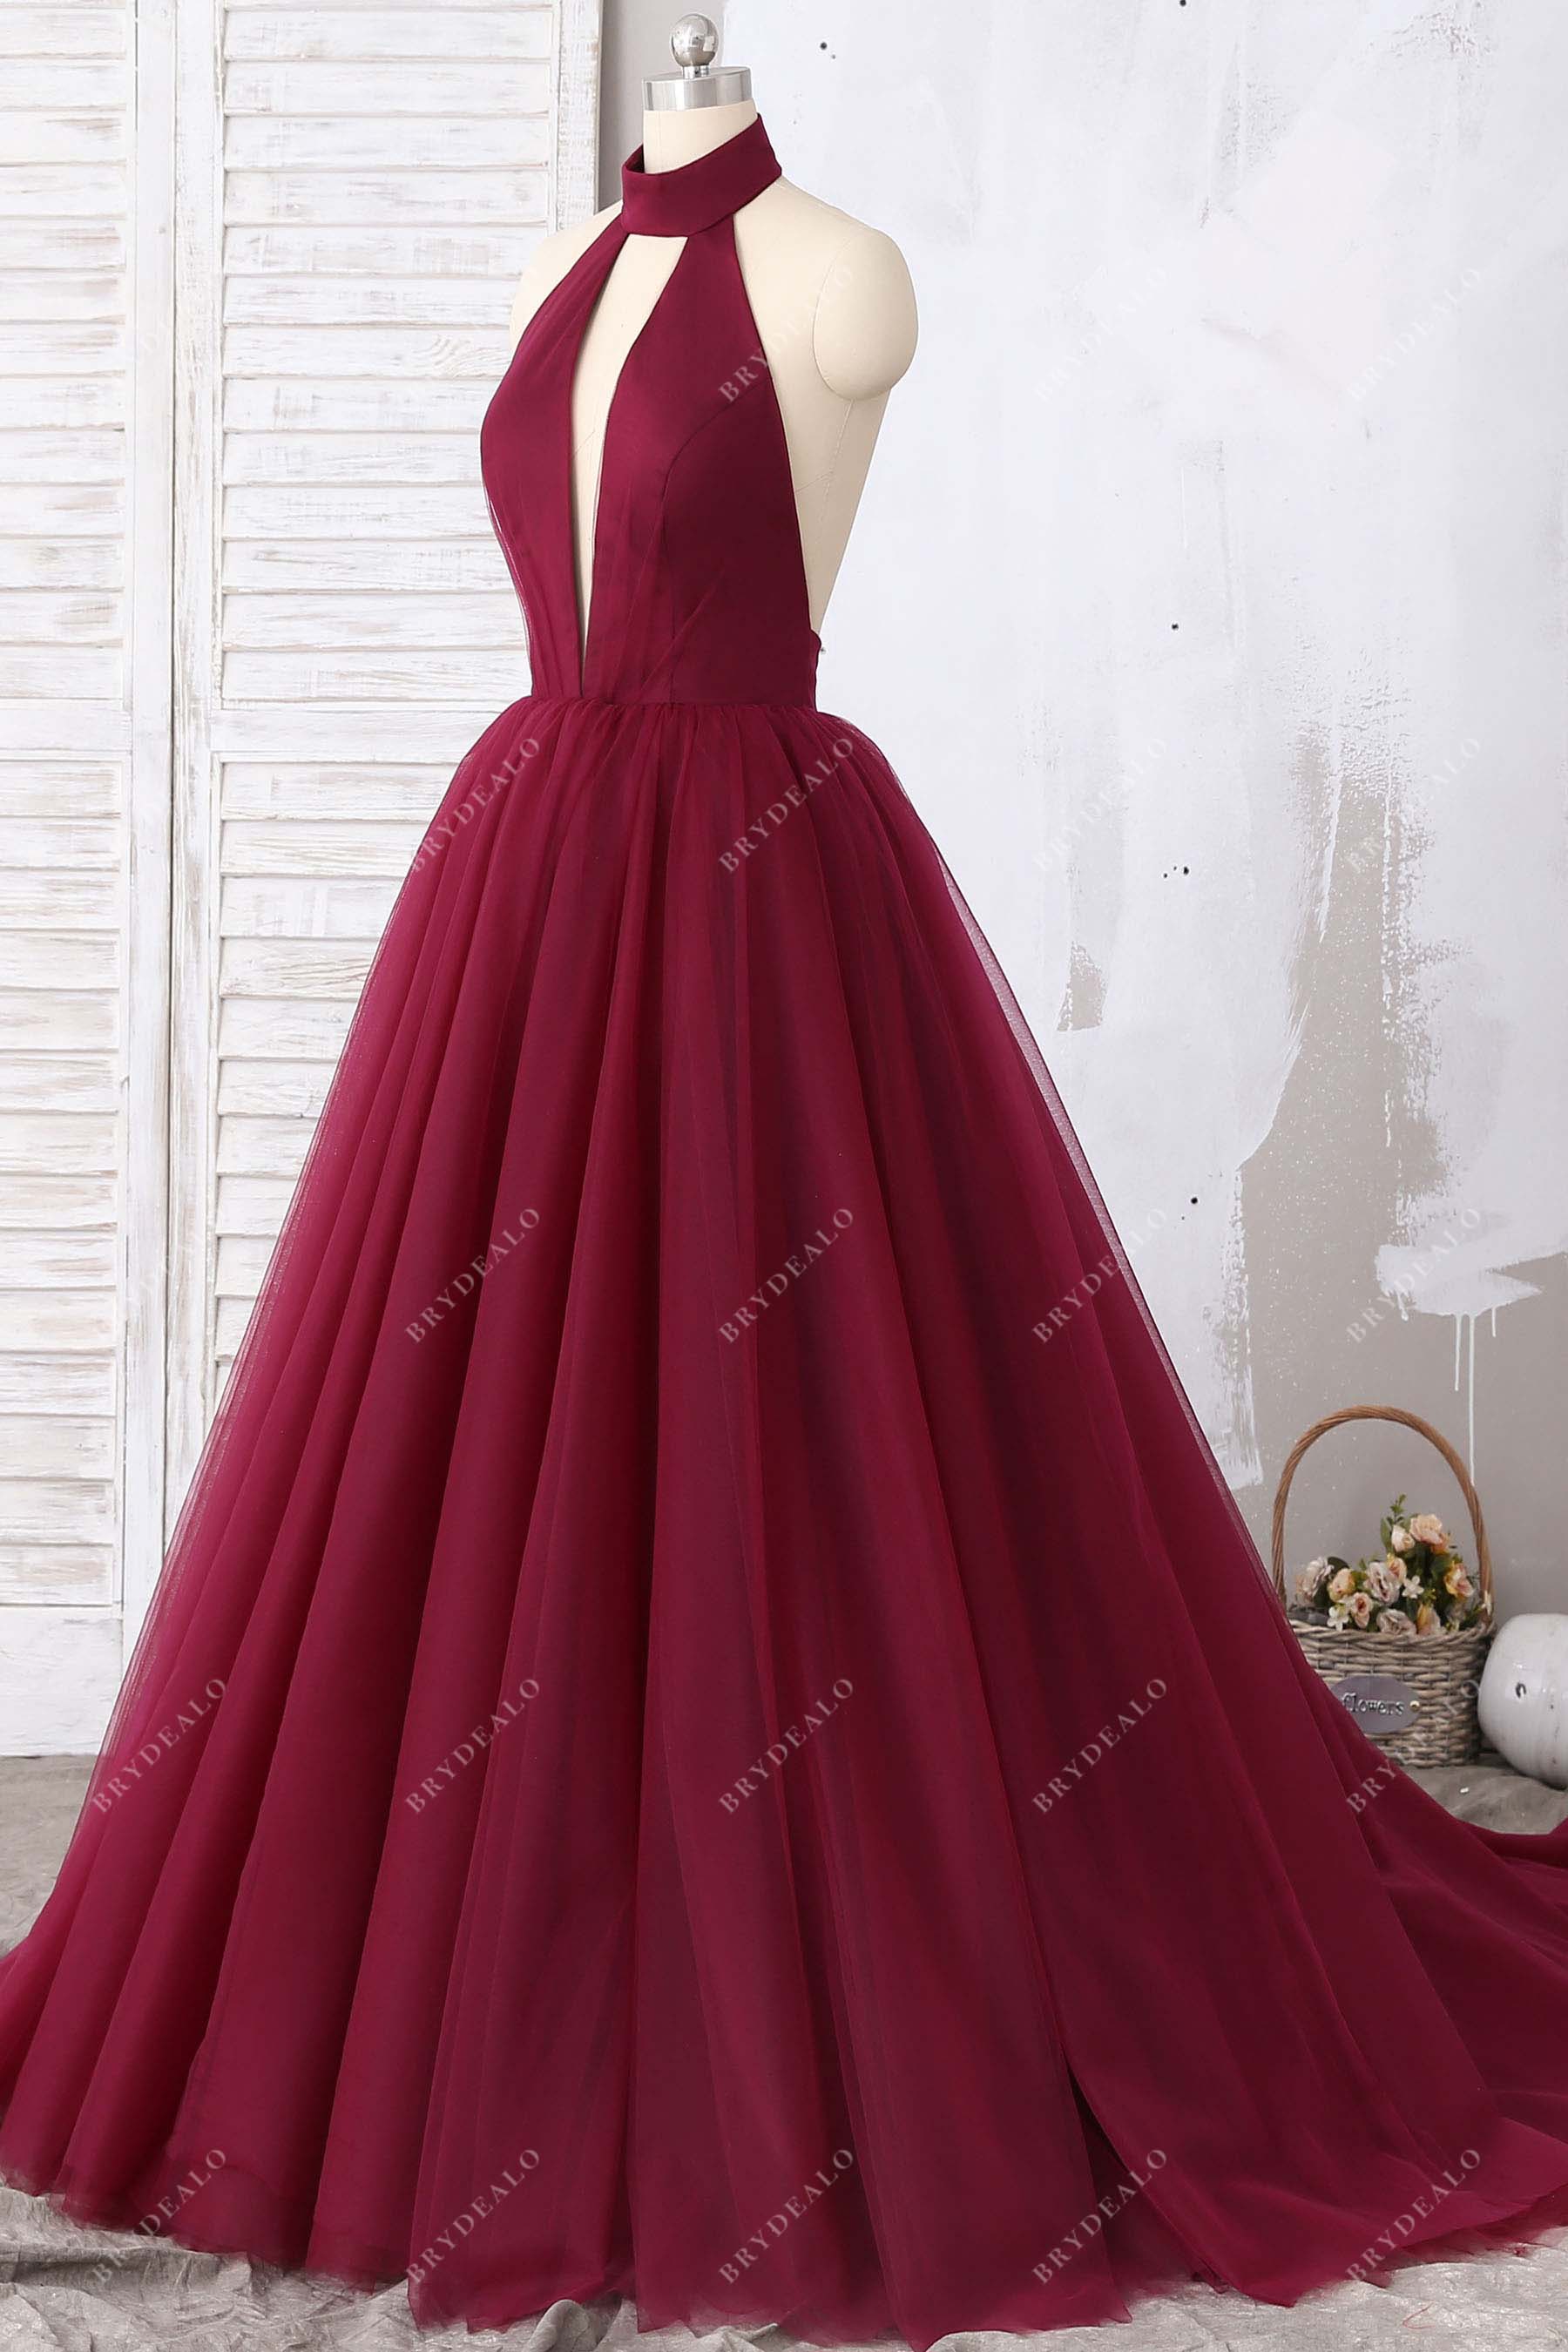 sleeveless ball-gown tulle halter prom dress